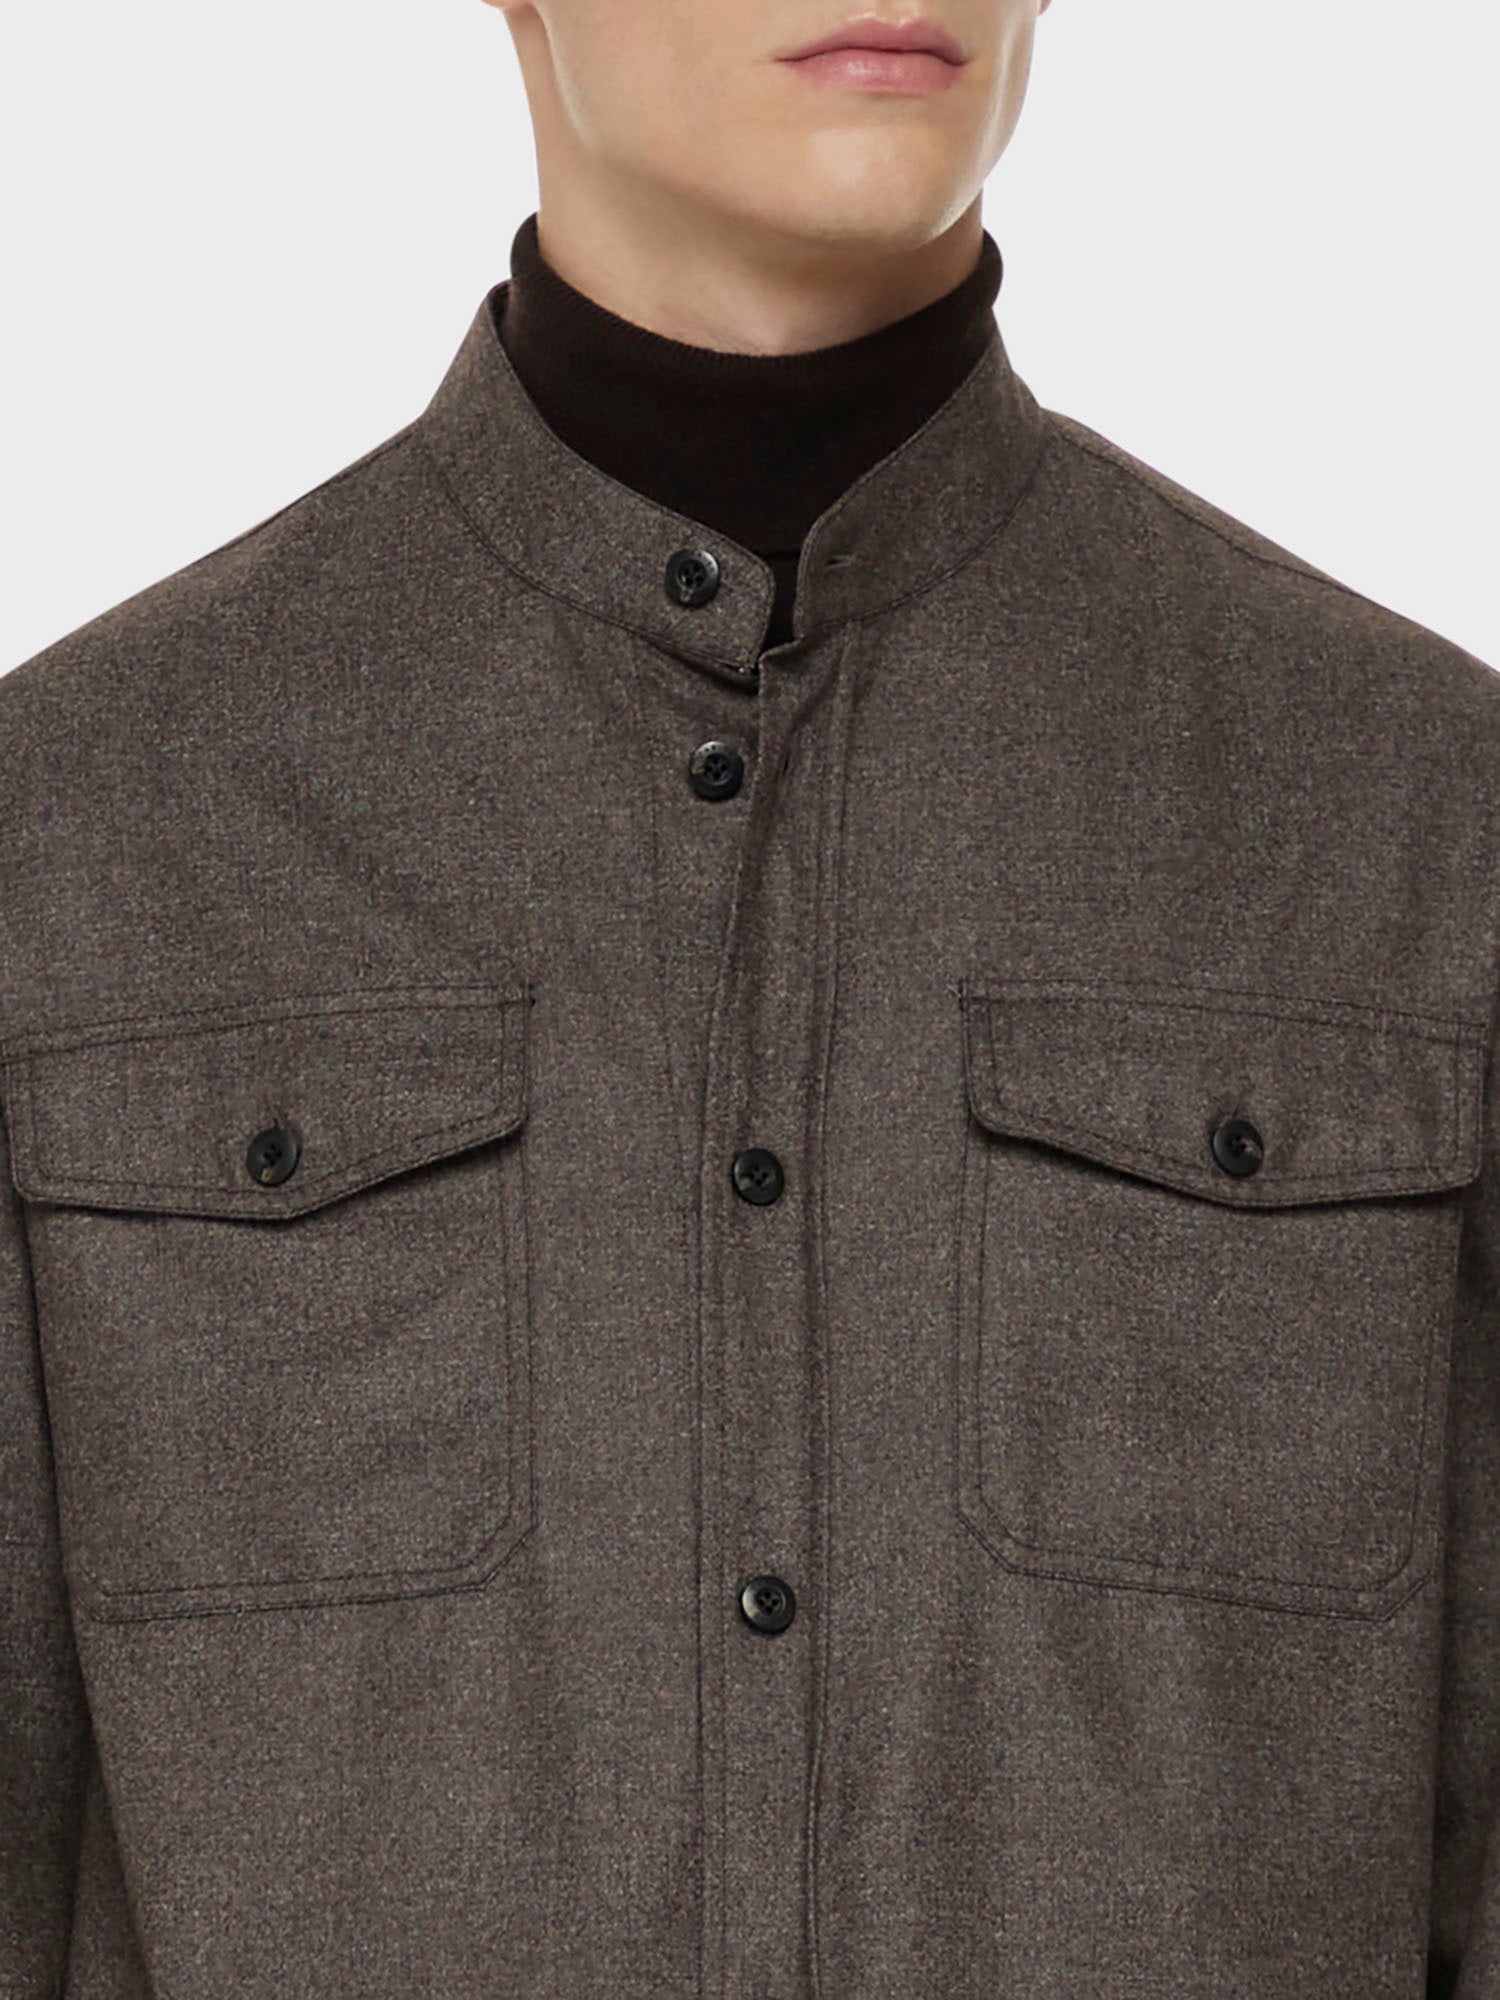 Caruso Menswear Abbigliamento Uomo Overshirt in flanella di lana marrone dettaglio